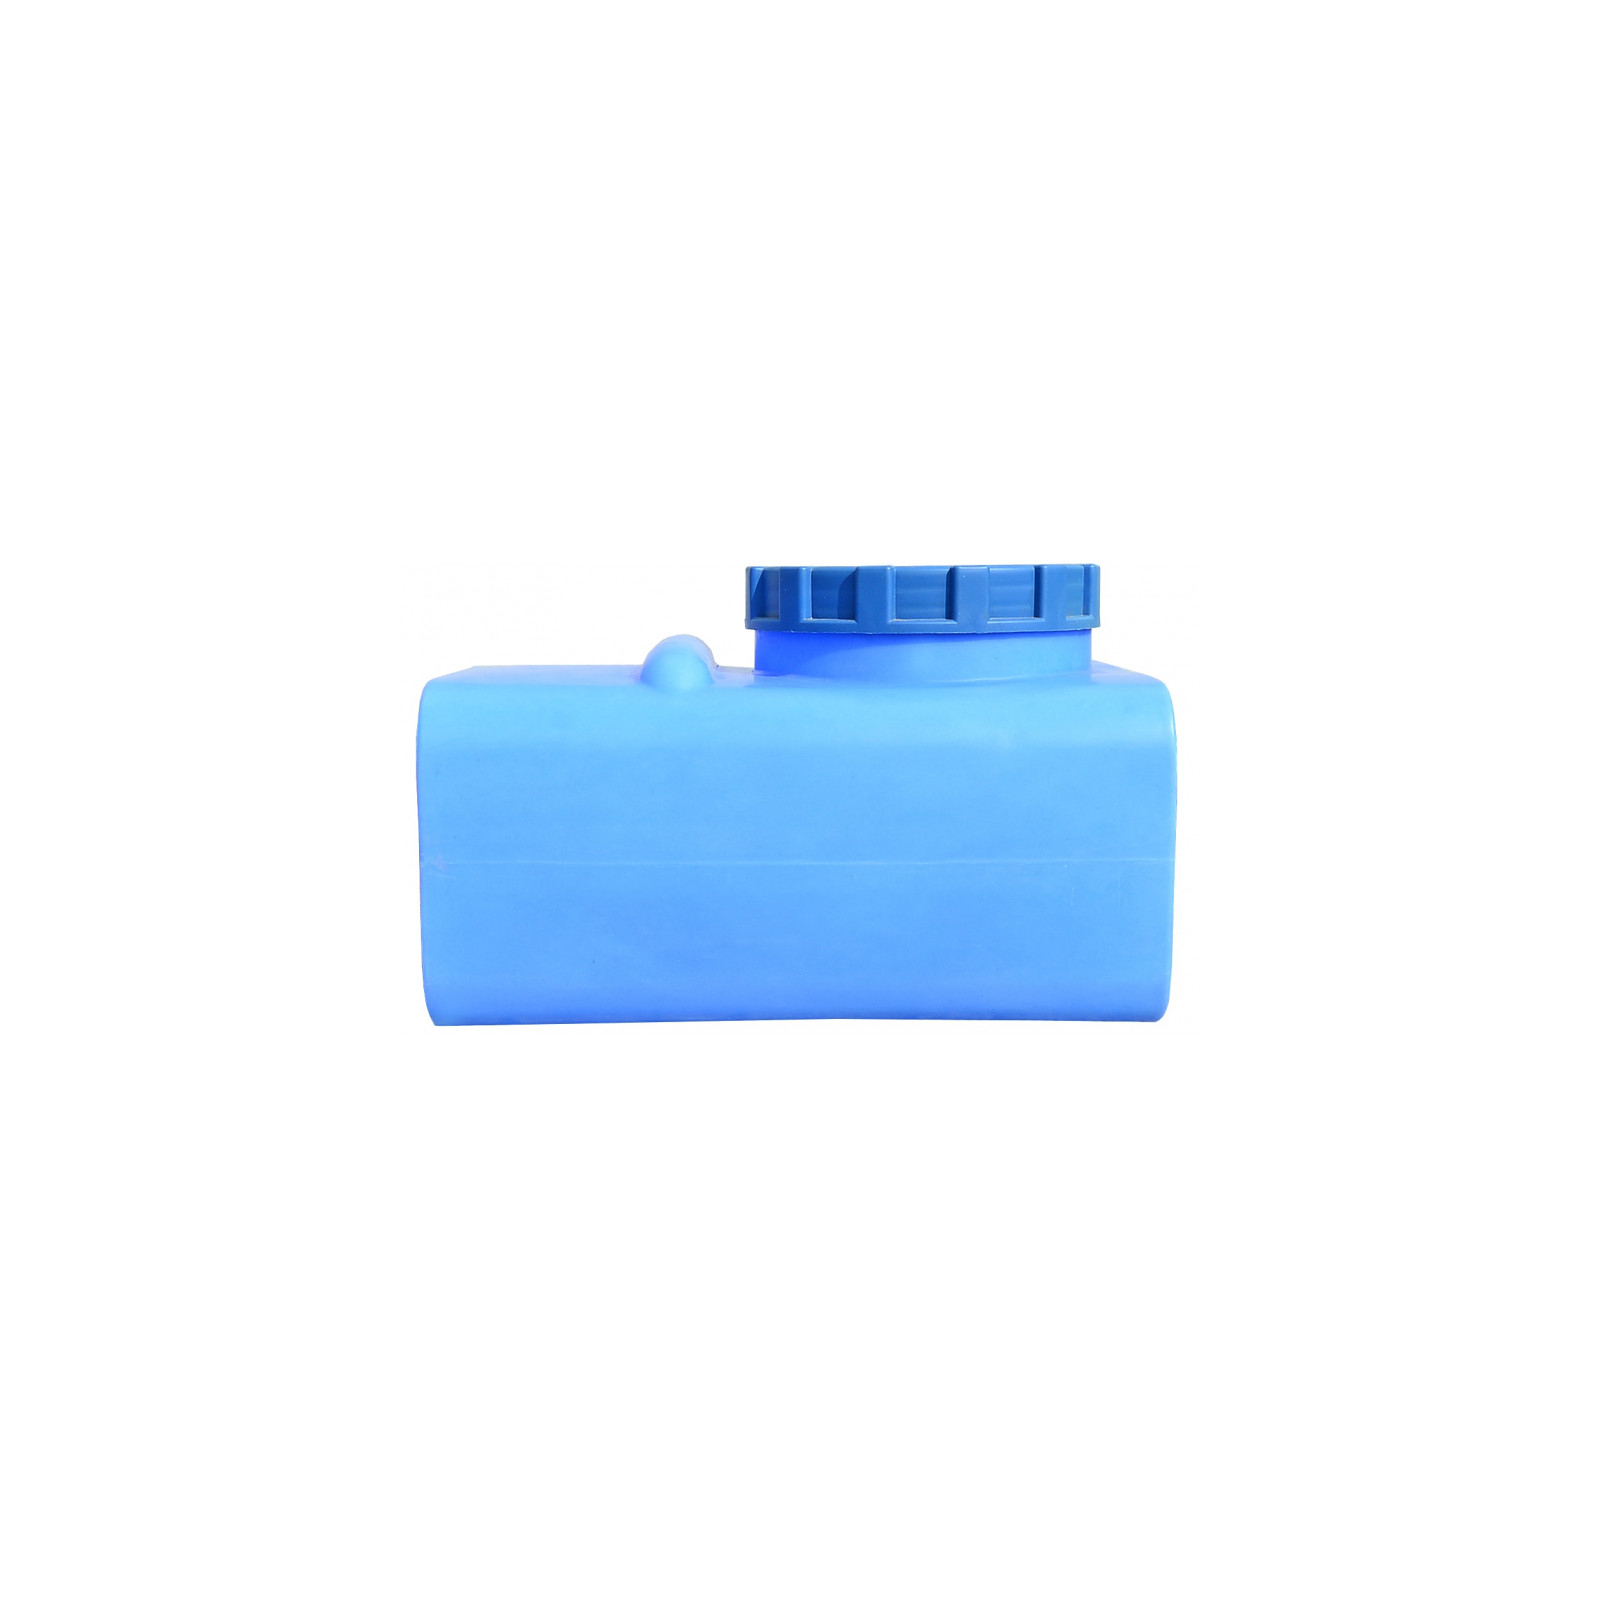 Емкость для воды Пласт Бак квадратная пищевая 100 л прямоугольная синяя (12453) изображение 3